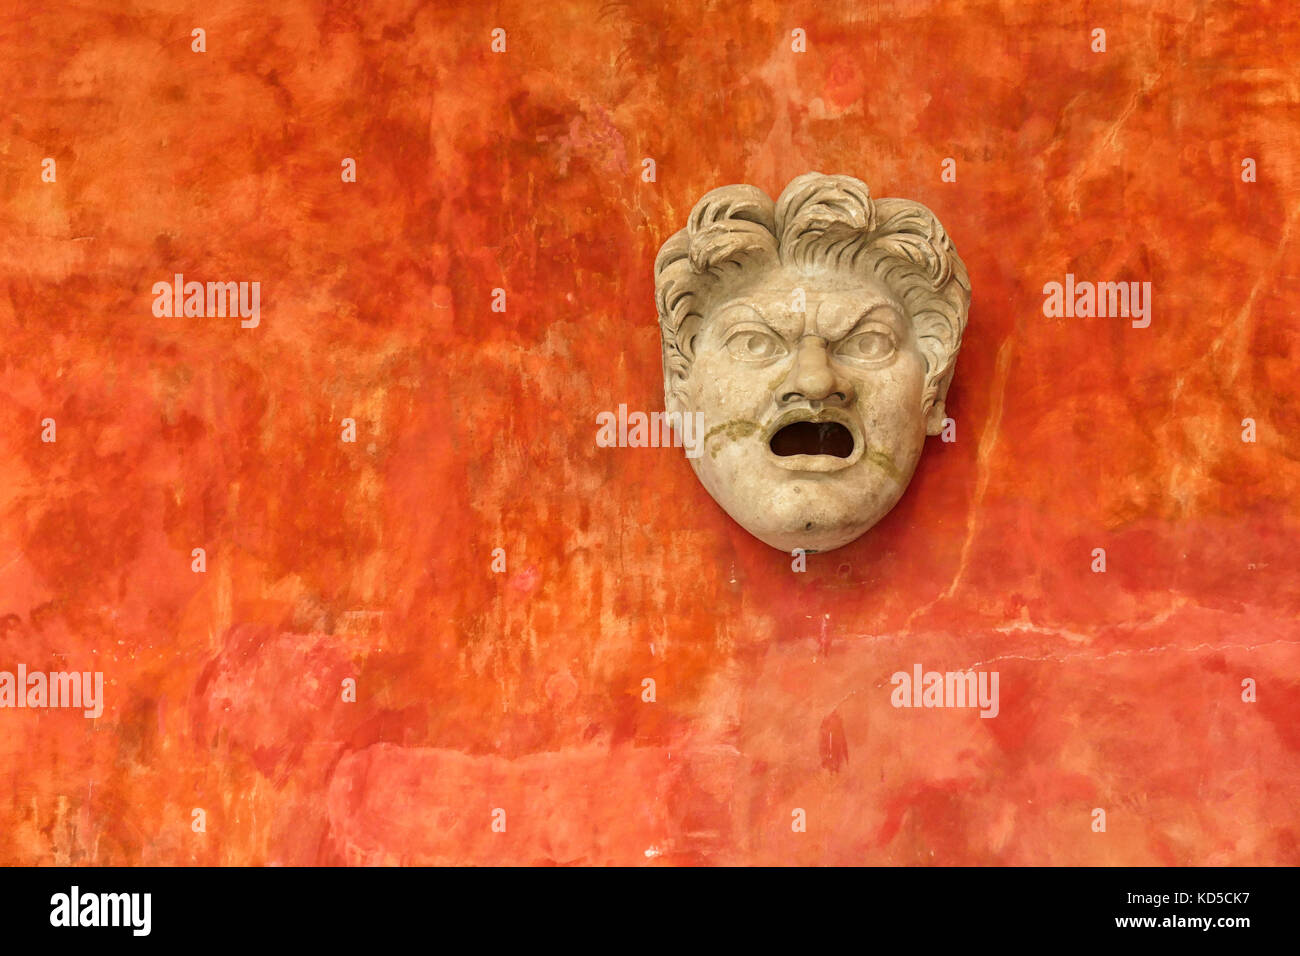 Face pierre d'homme en colère contre un mur orange vif. ancienne cité romaine en tête museum Glyptotek de Copenhague, Danemark Banque D'Images